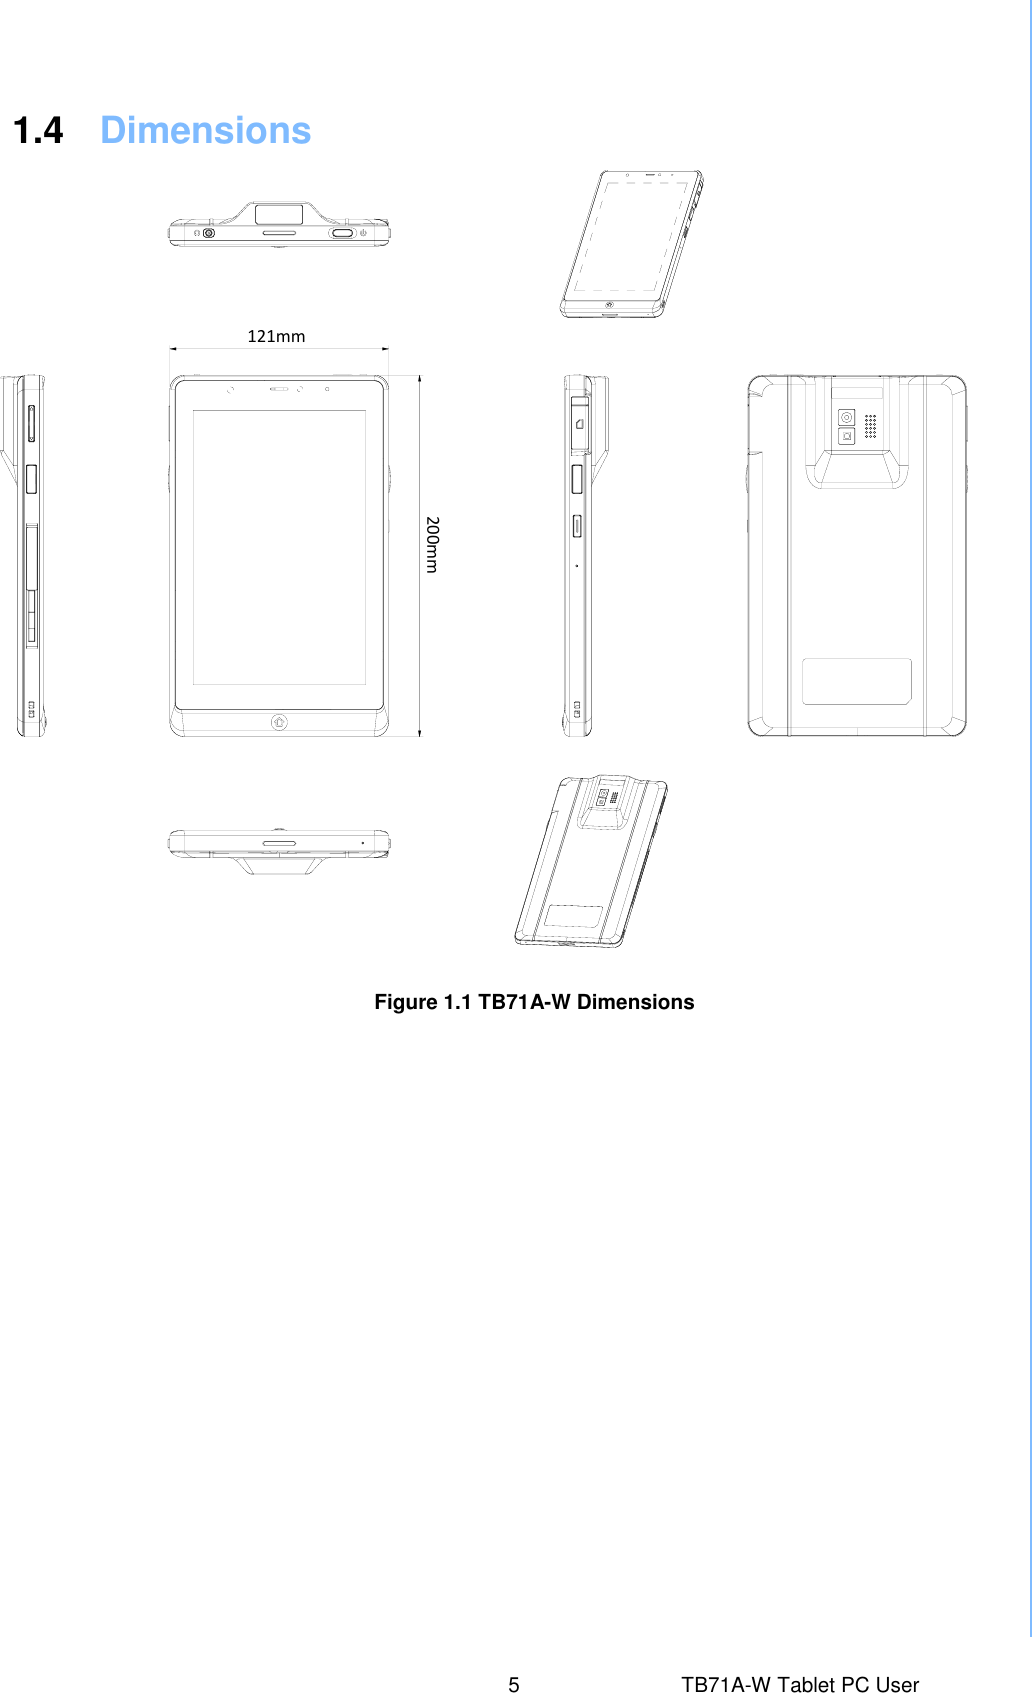  1.4  Dimensions Figure 1.1 TB71A-W Dimensions 5  TB71A-W Tablet PC User Manual 121mm 200mm  